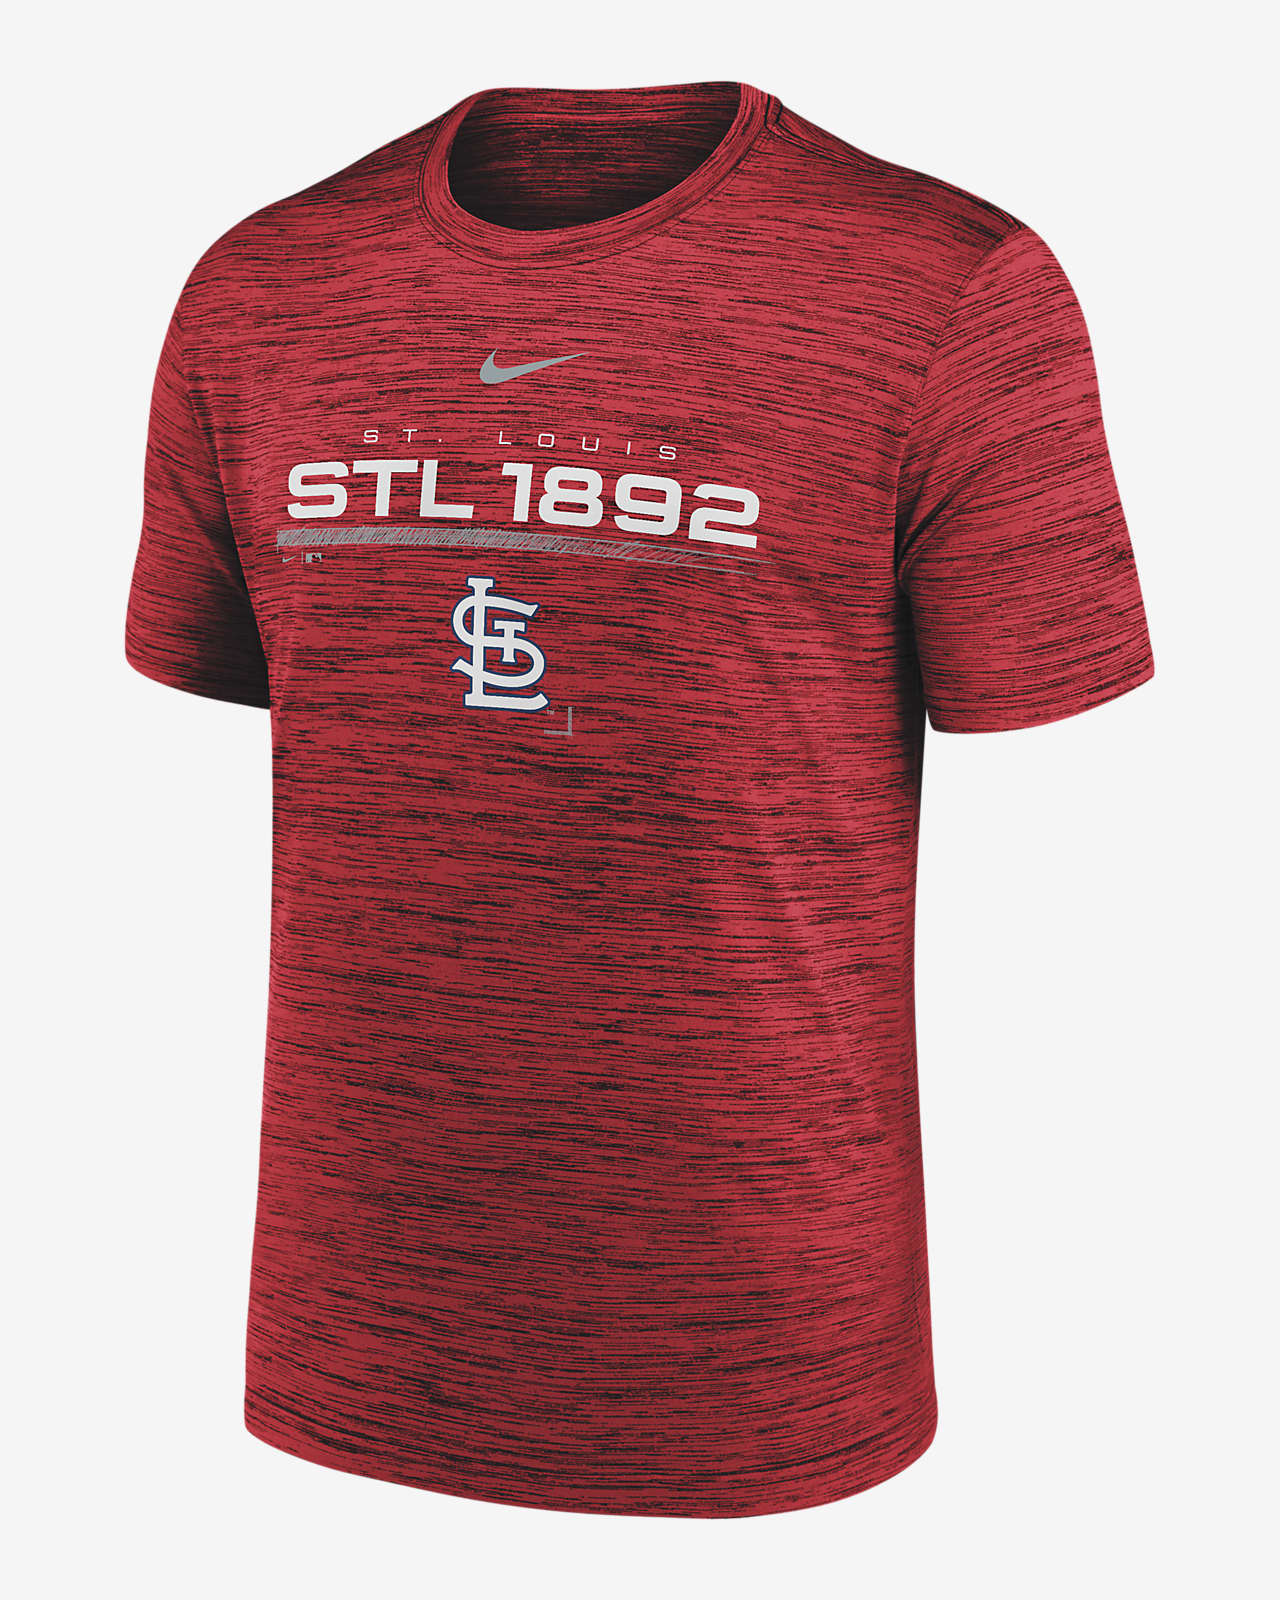 St Louis Cardinals Shirt St Louis Cardinals STL Cardinals 